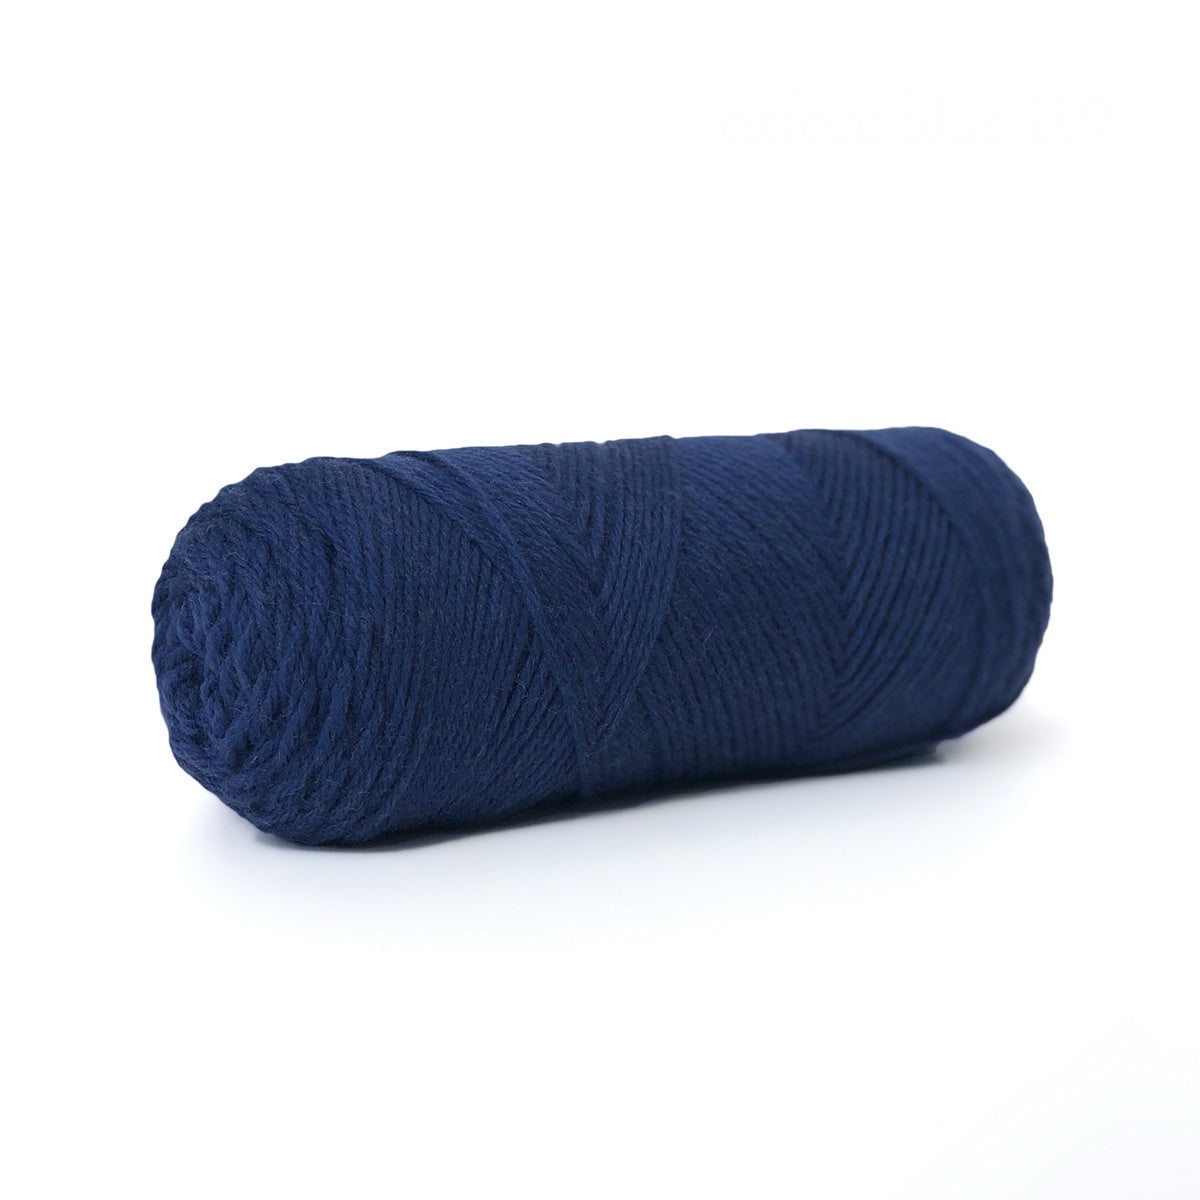 Sille Slipover Kit, Size 1 (Oxford Blue)